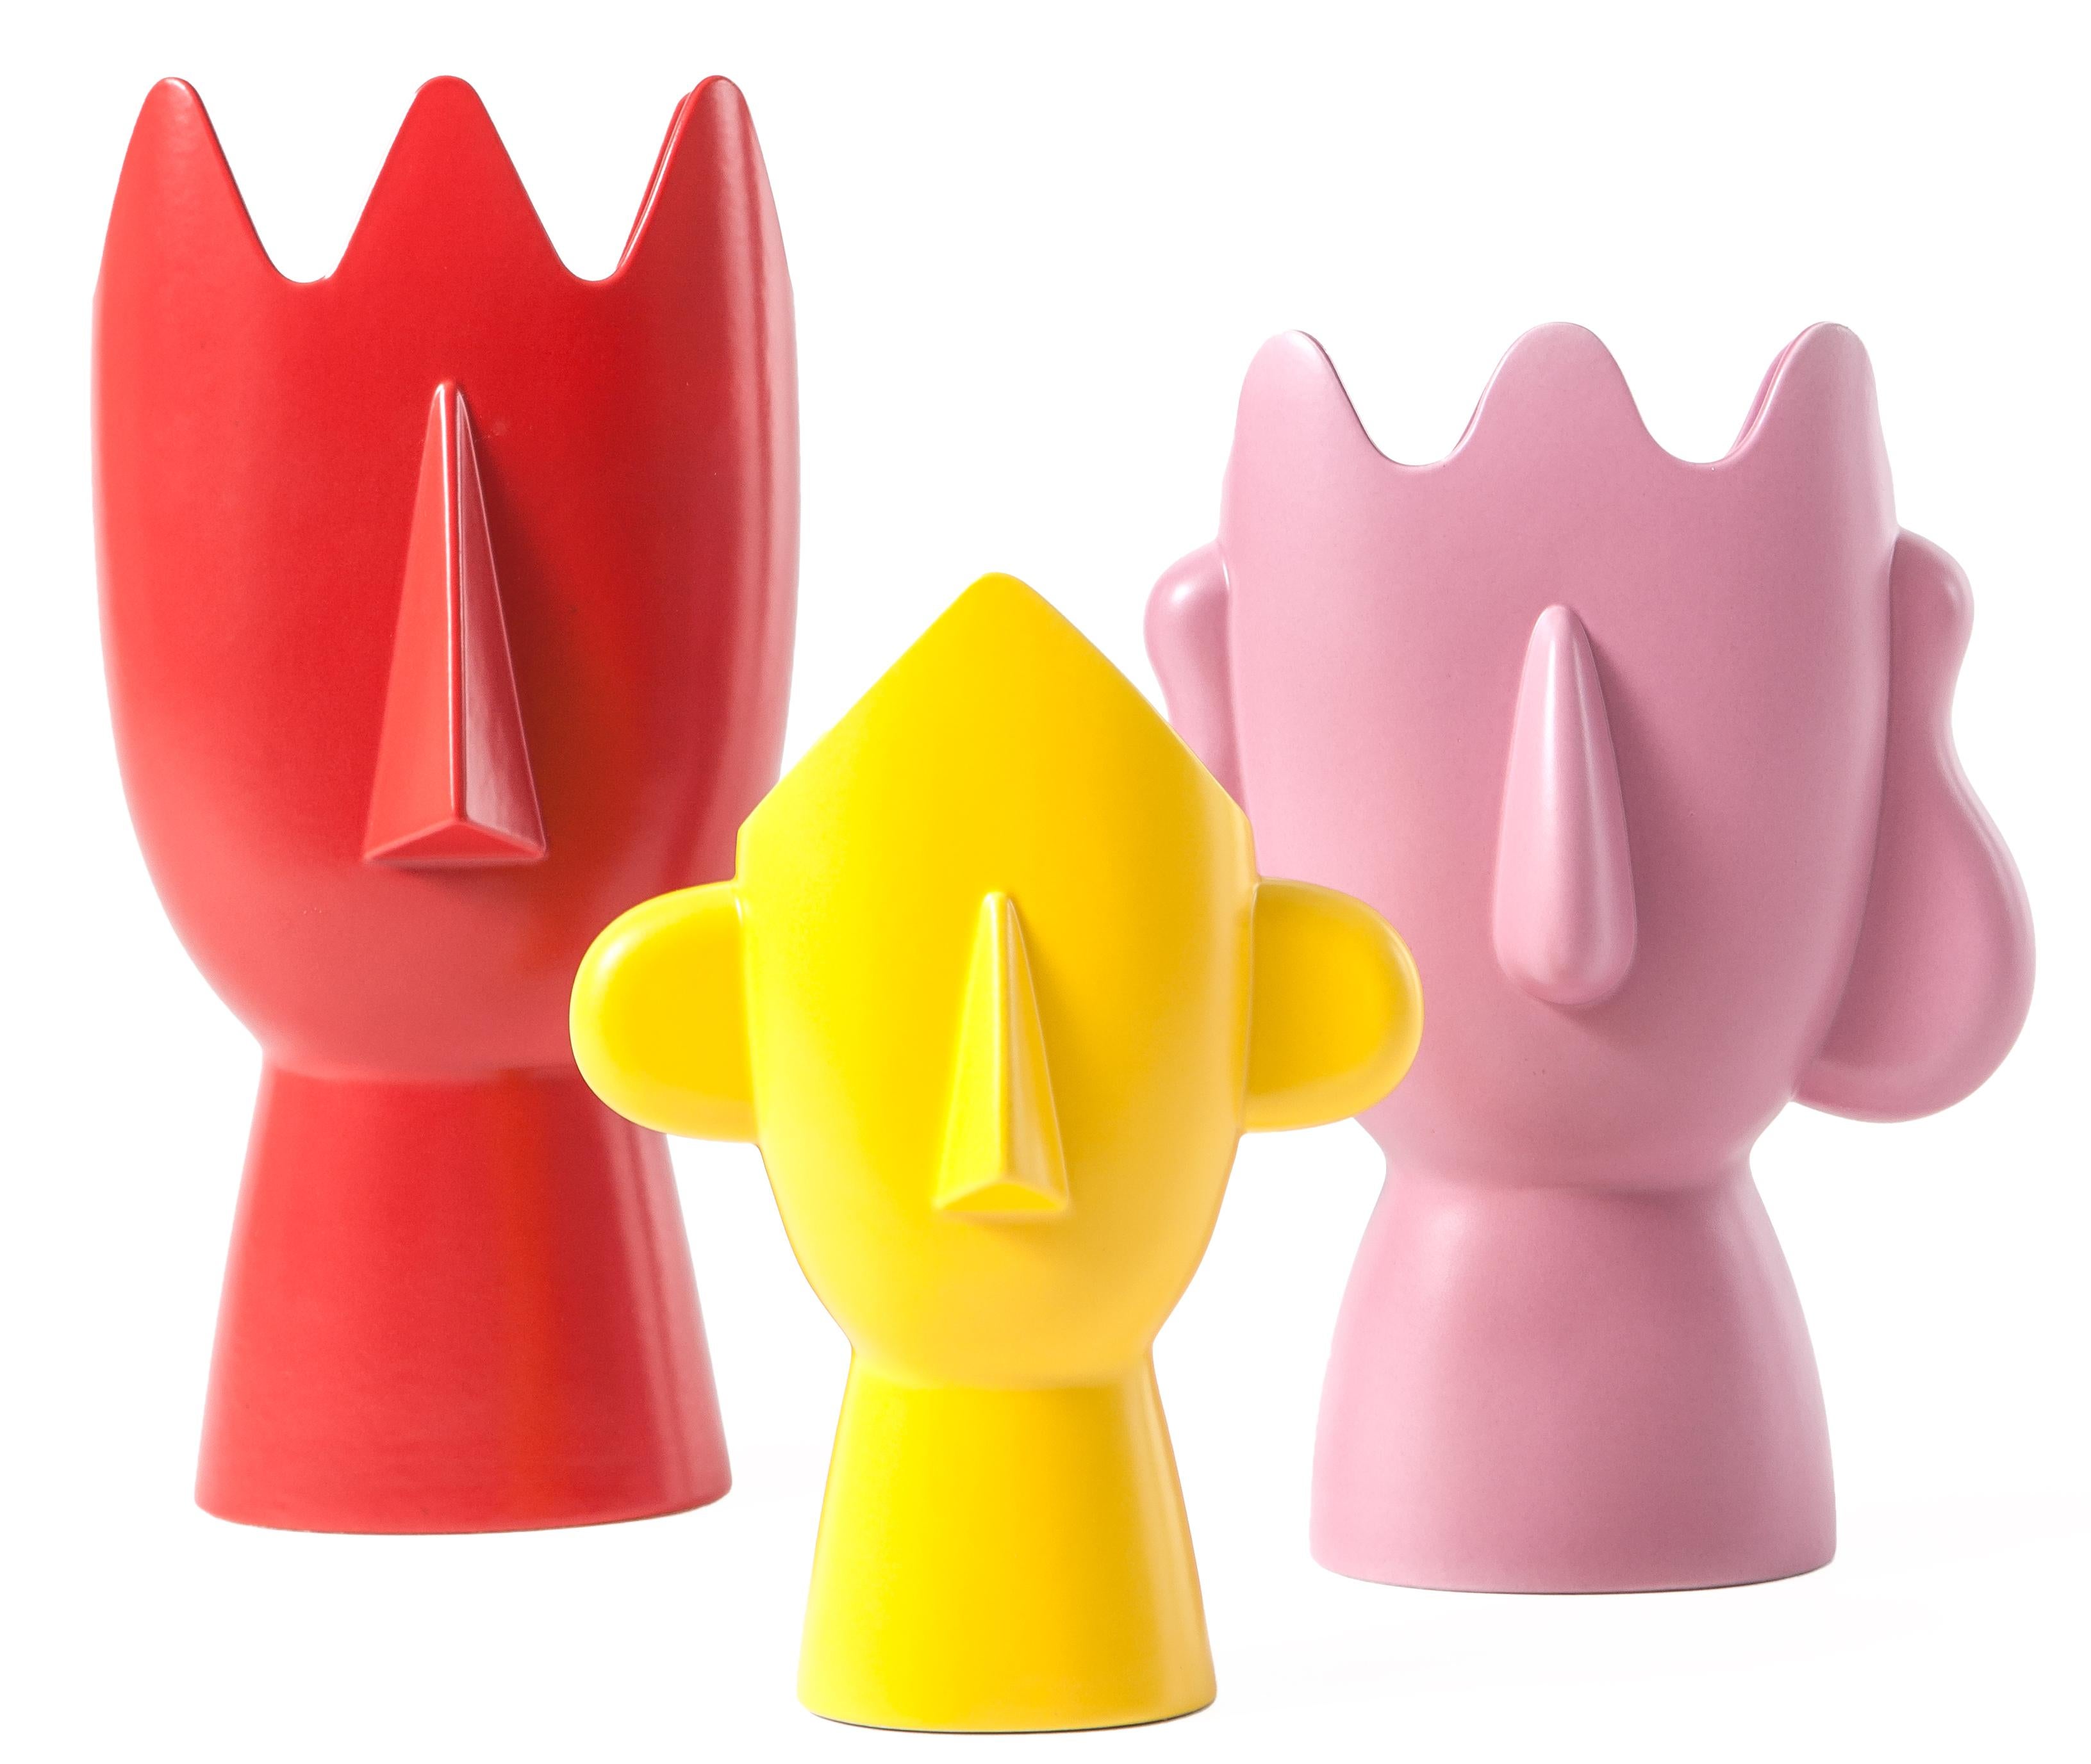 La famille Diavoletti de Daniel Eltner est une collection de trois vases différents, chacun ayant une couleur distincte. Le Diavoletto rouge, le Diavoletta rose et le Diavoletto jaune forment un énigmatique triptyque contemporain, une